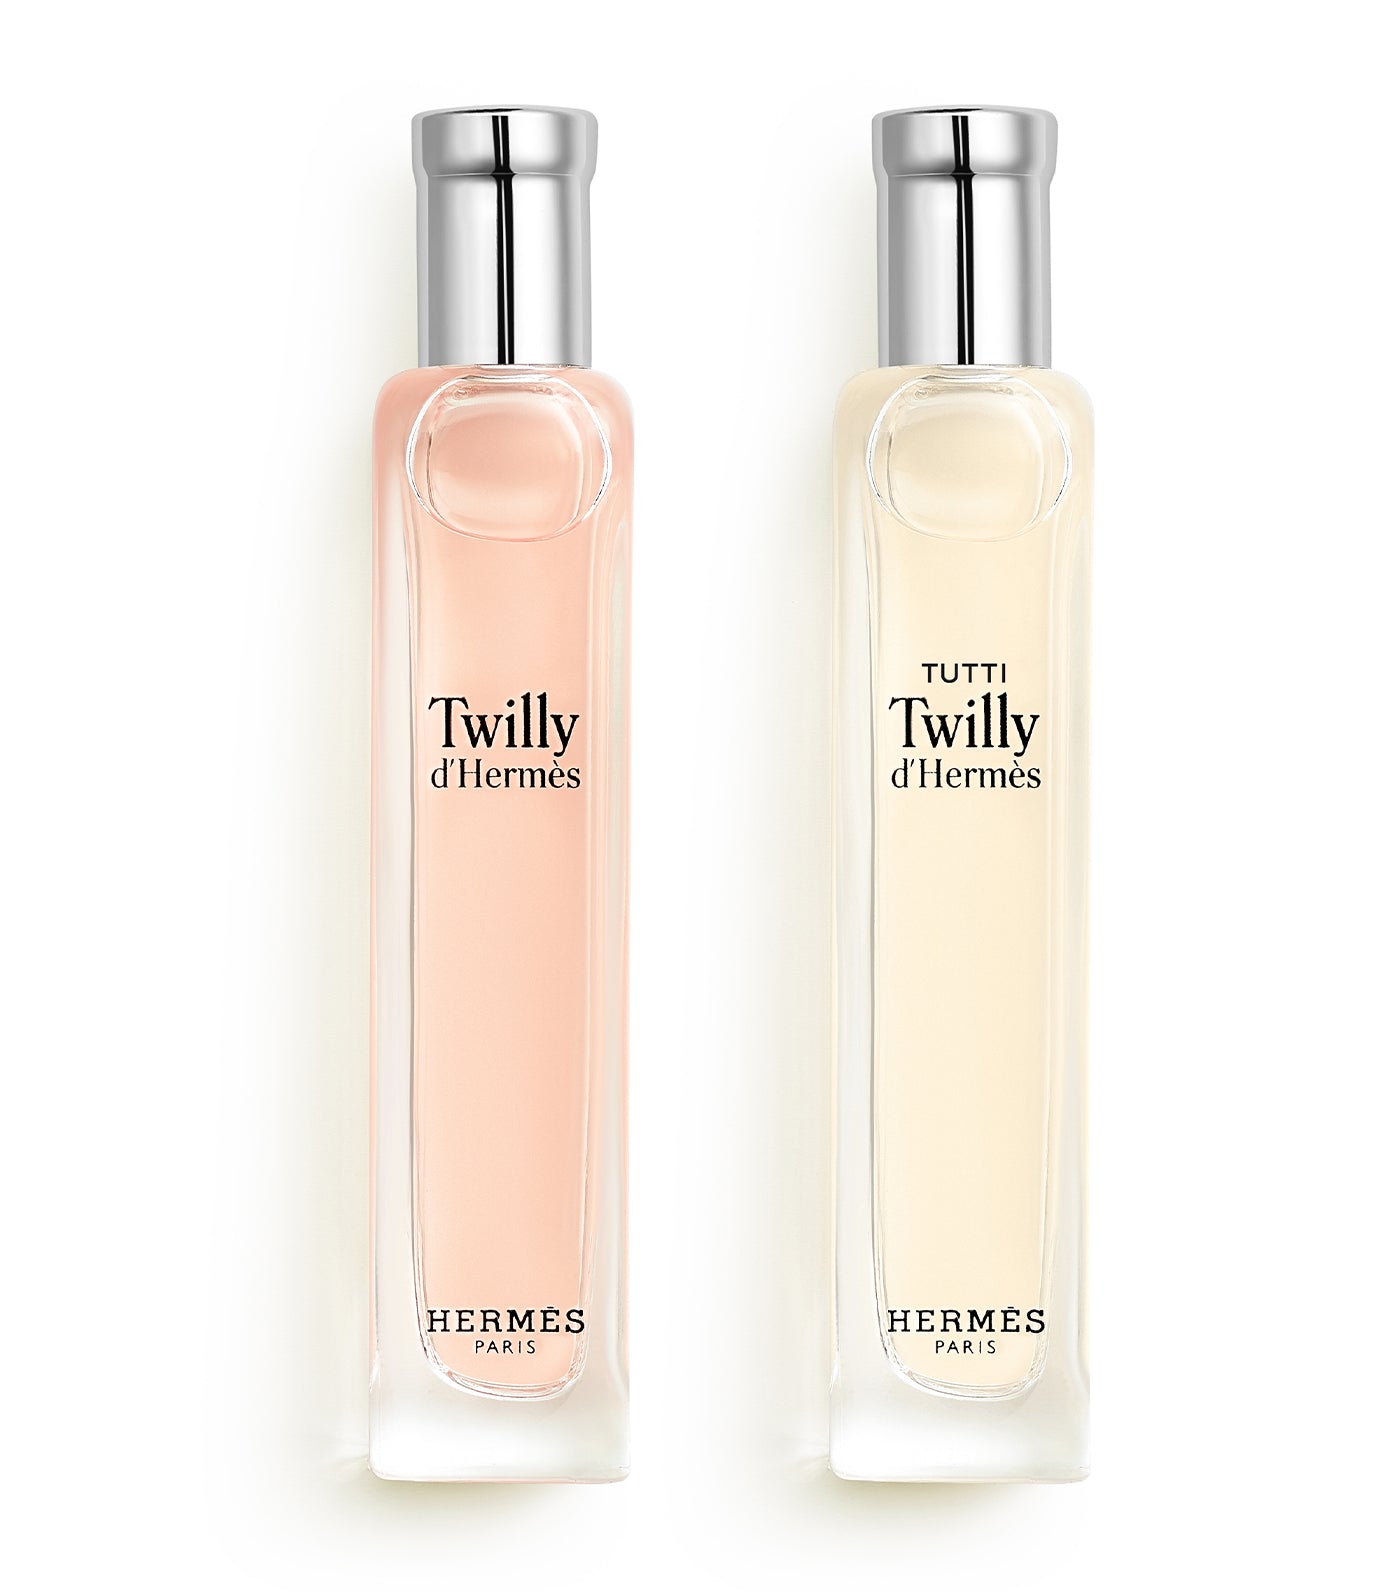 Twilly d'Hermès and Tutti Twilly d'Hermès gift set Eau de Parfum